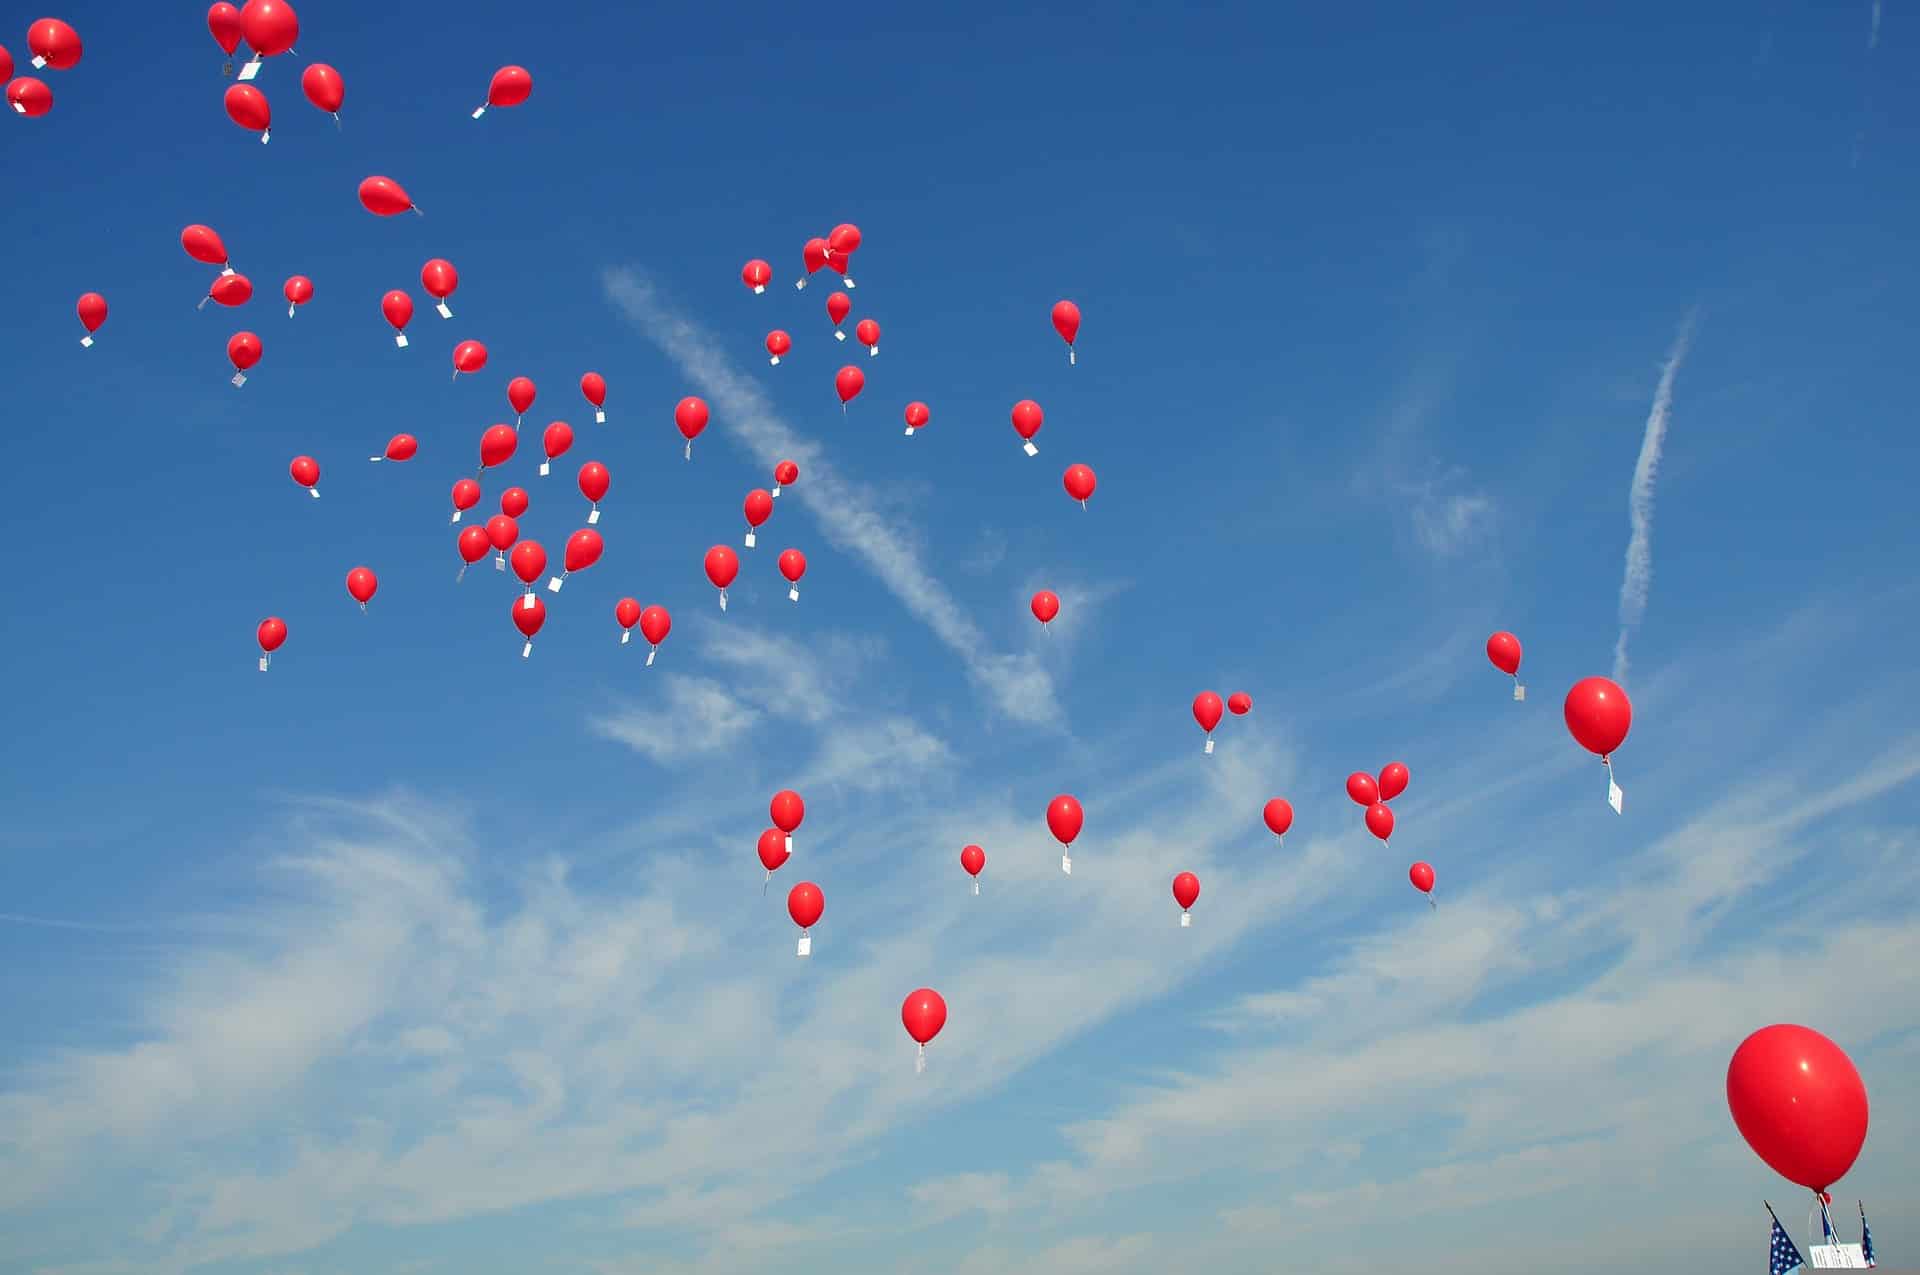 Heliumballons für Partys? Erfahren Sie alles über sie